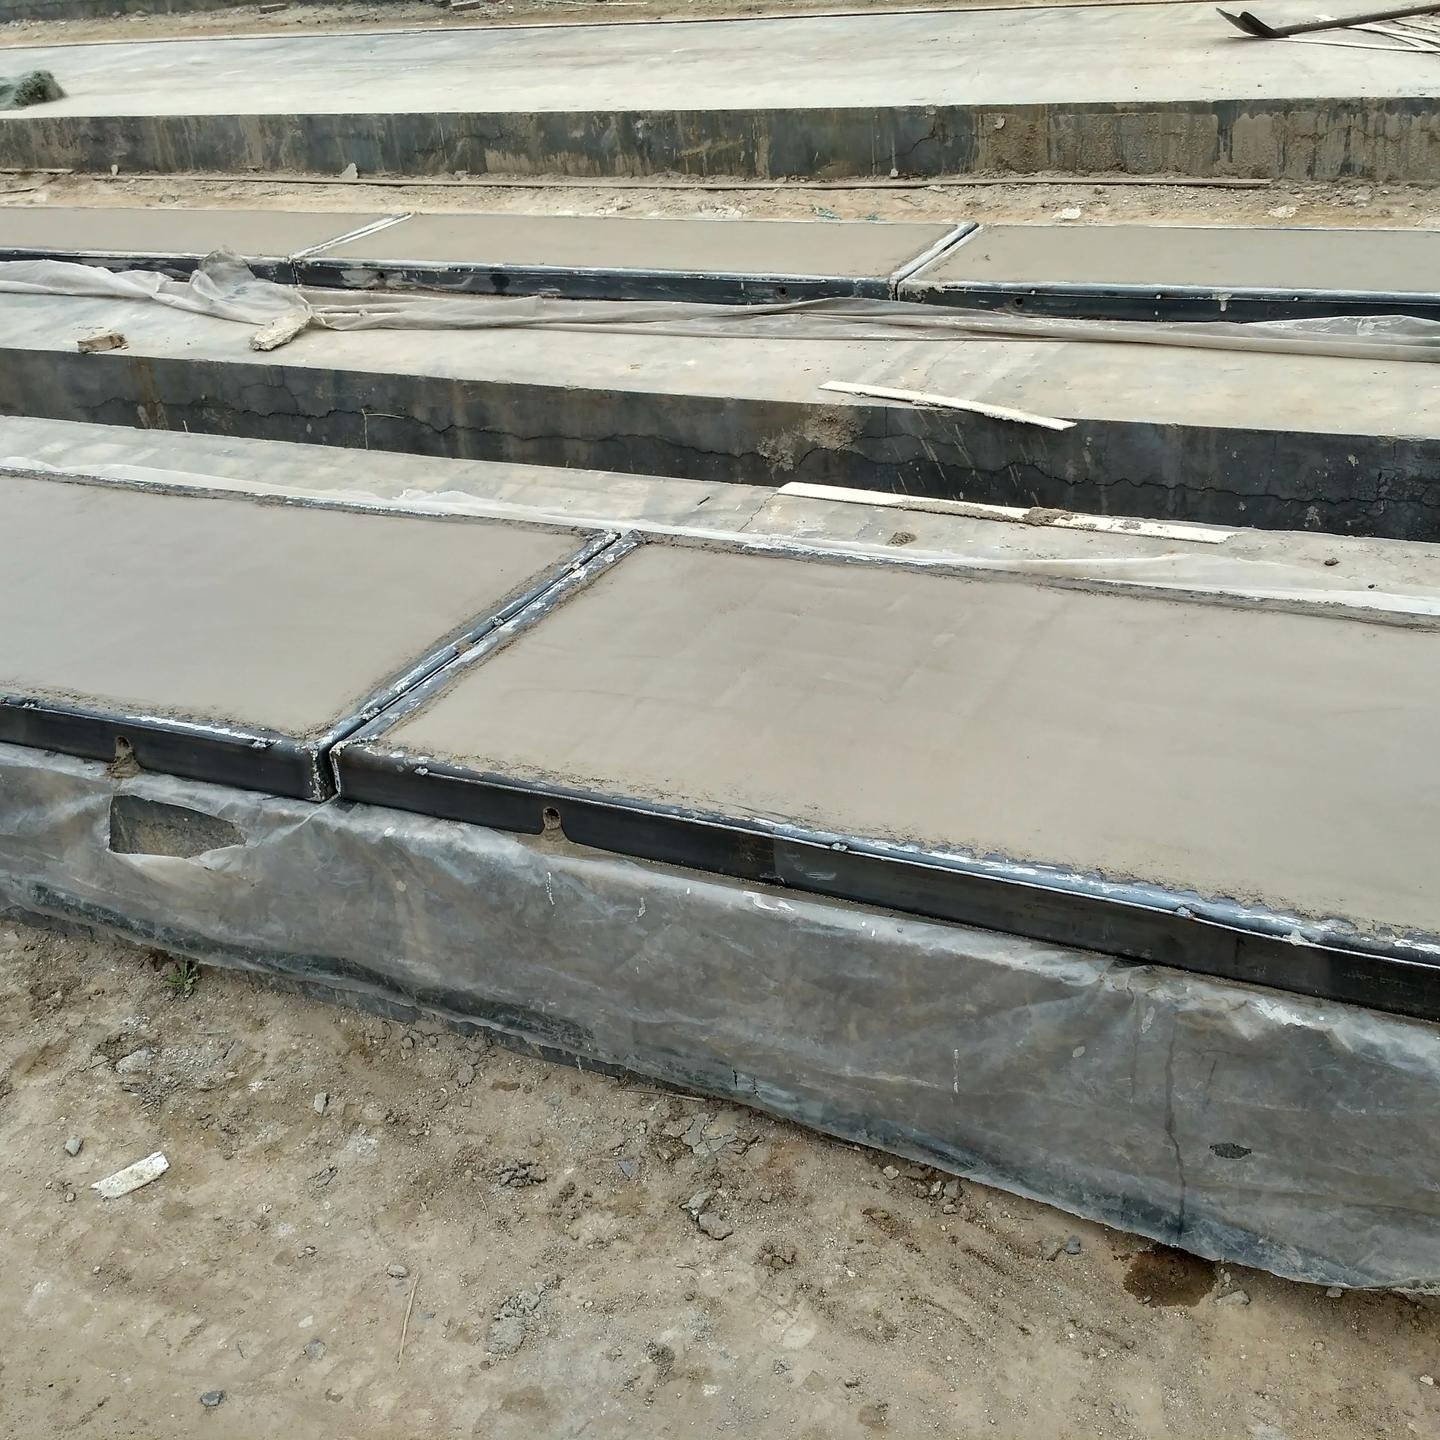 供应河北石家庄loft夹层楼板 钢构轻型复合板 钢框轻型屋面板预订从速图片